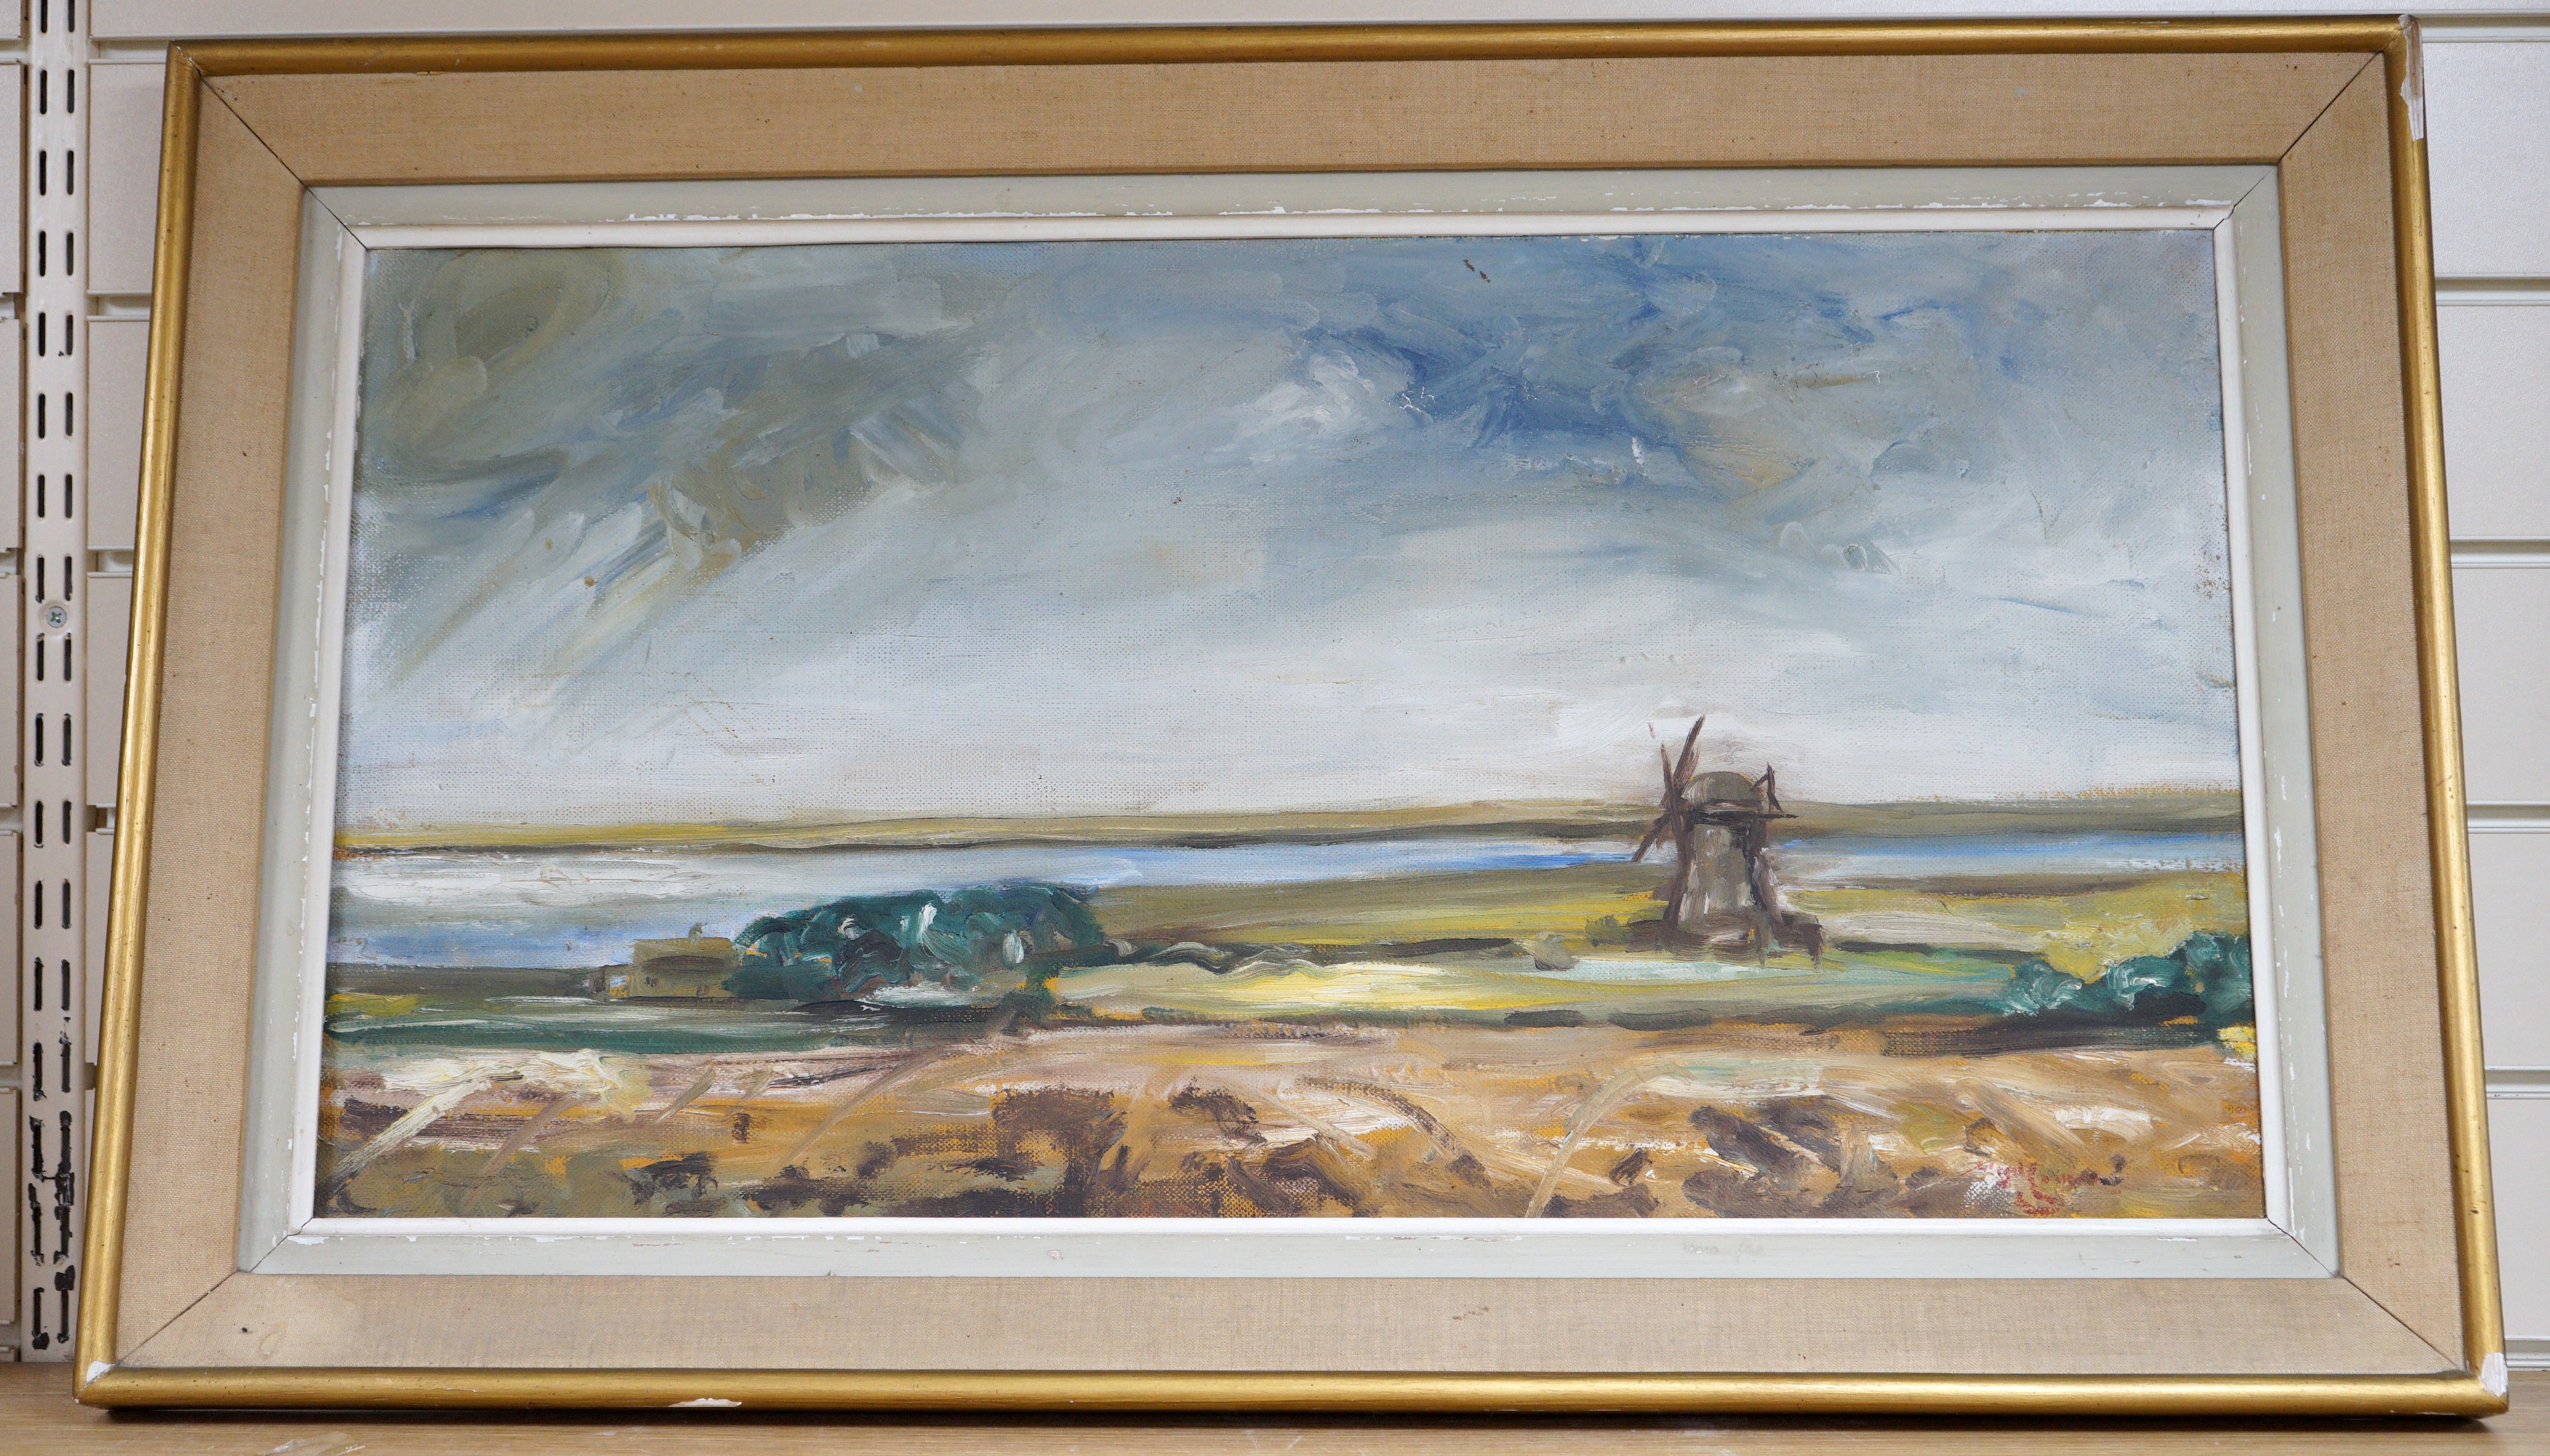 Nigel Longmore, oil on canvas, Windmill in a landscape, 37 x 70cm